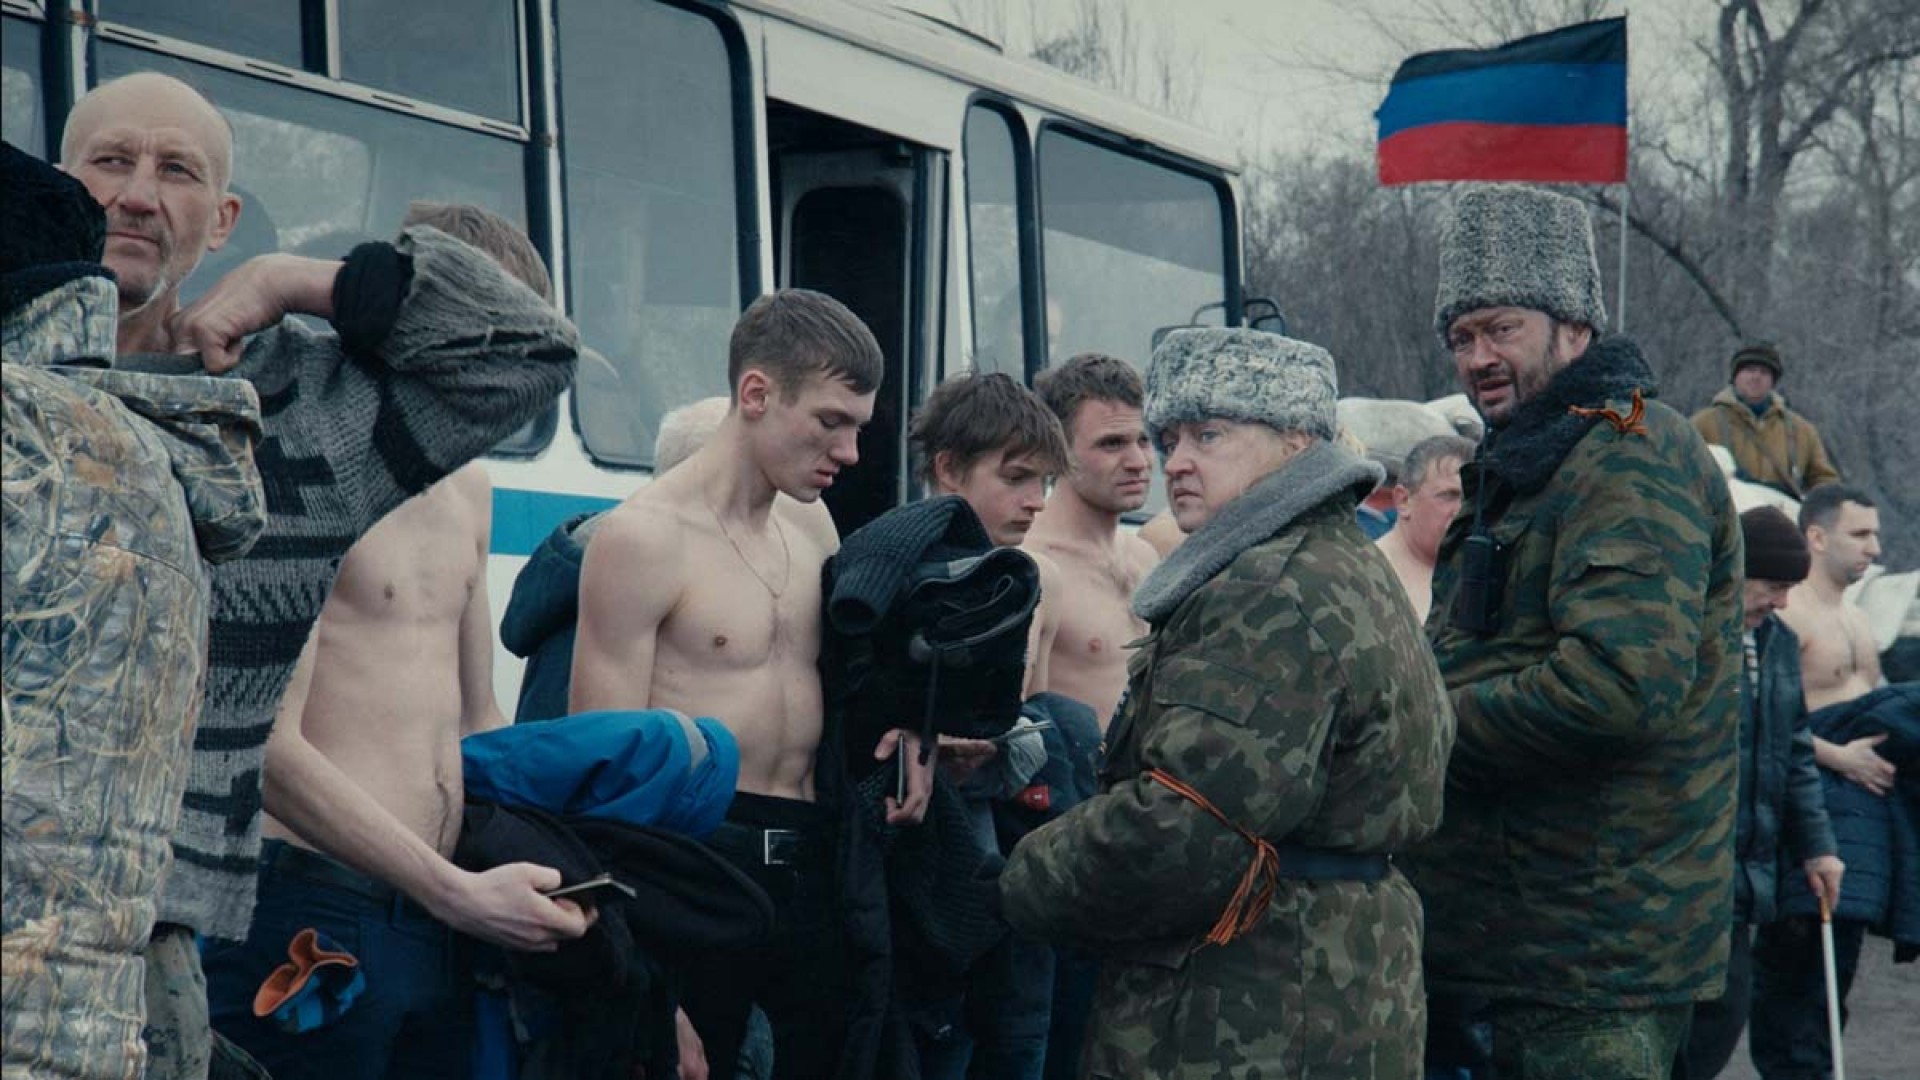 Cinemacat: Donbass